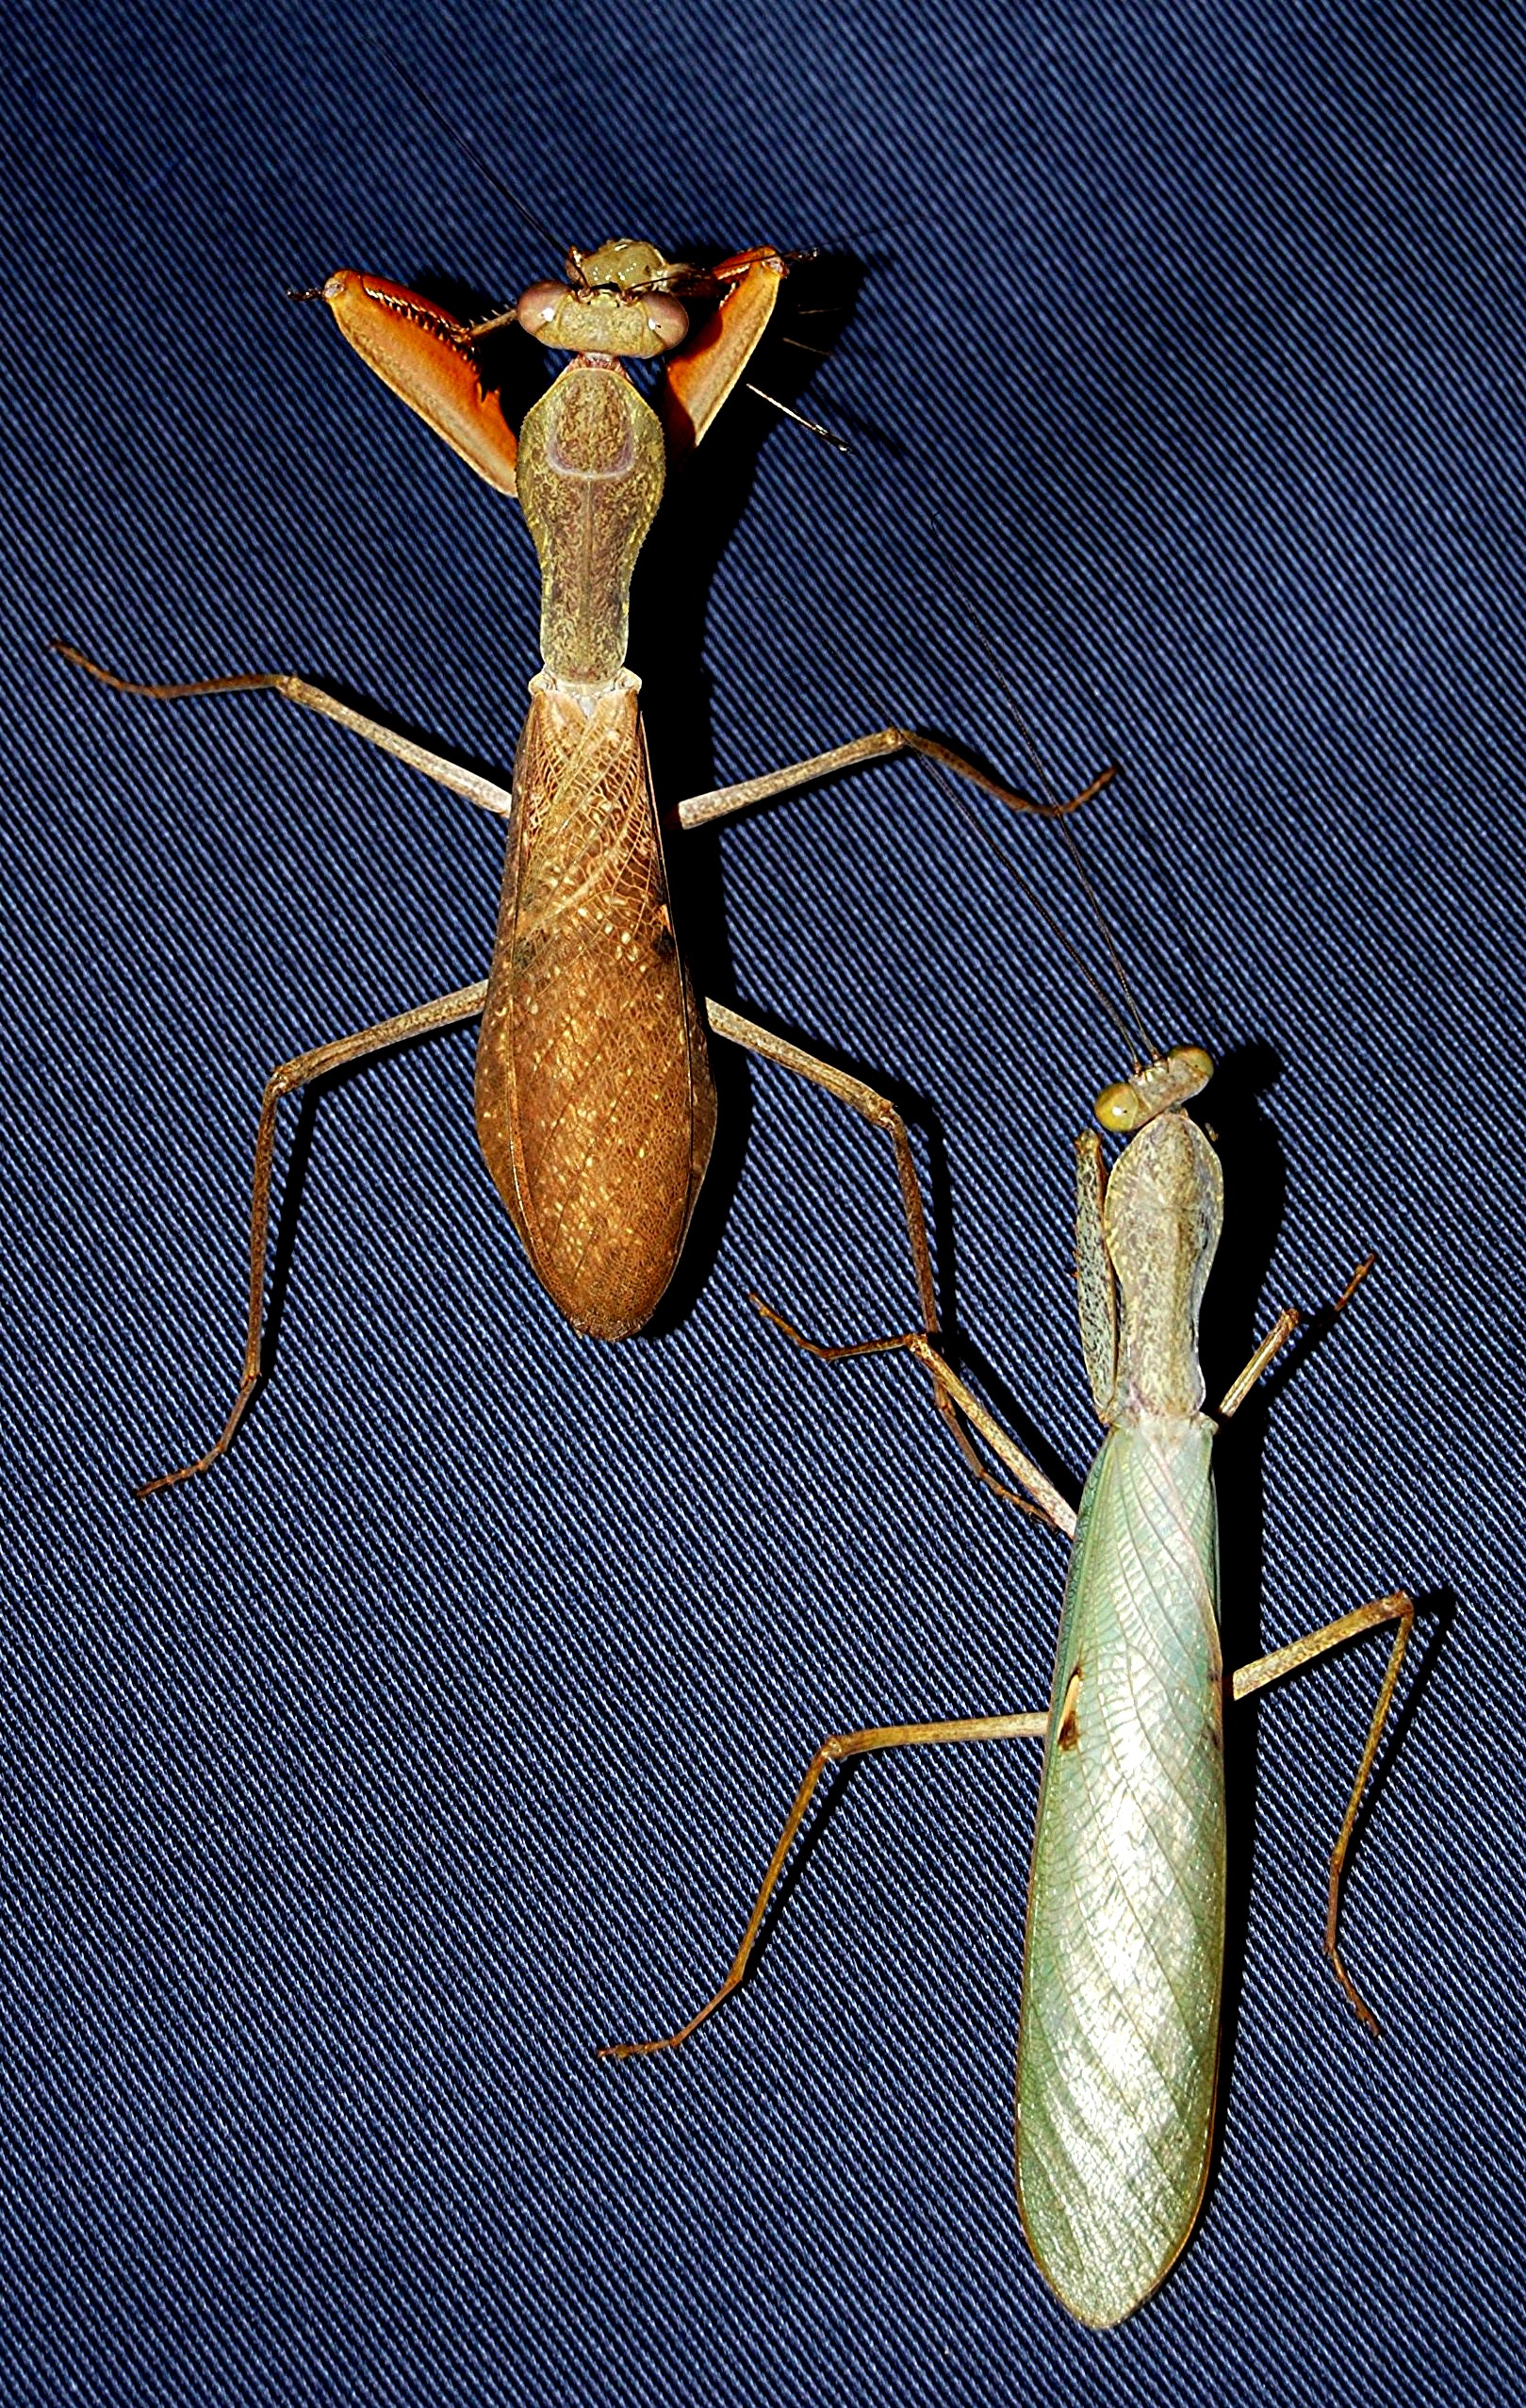 巨型大螳螂照片图片